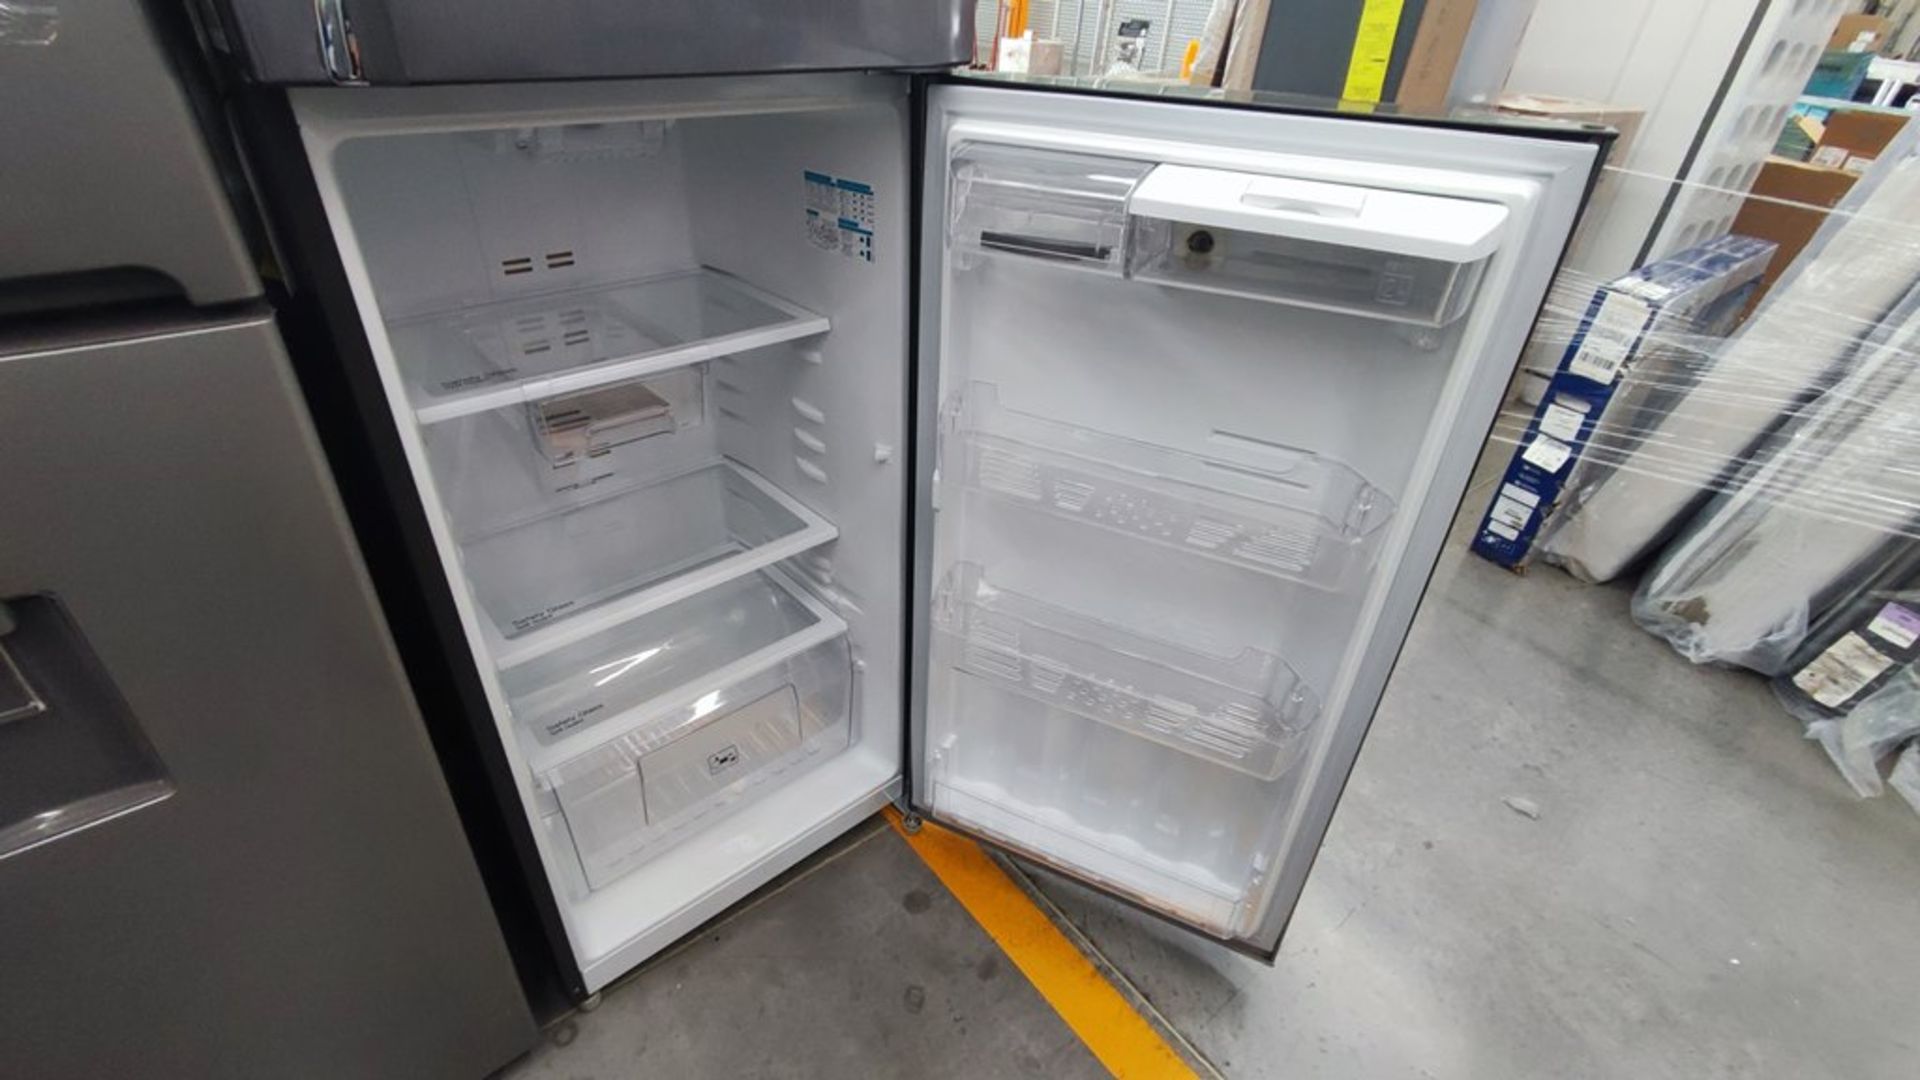 Lote de 2 refrigeradores contiene: 1 Refrigerador Marca Mabe, Modelo RMT400RY, No de serie 2202B401 - Image 9 of 15